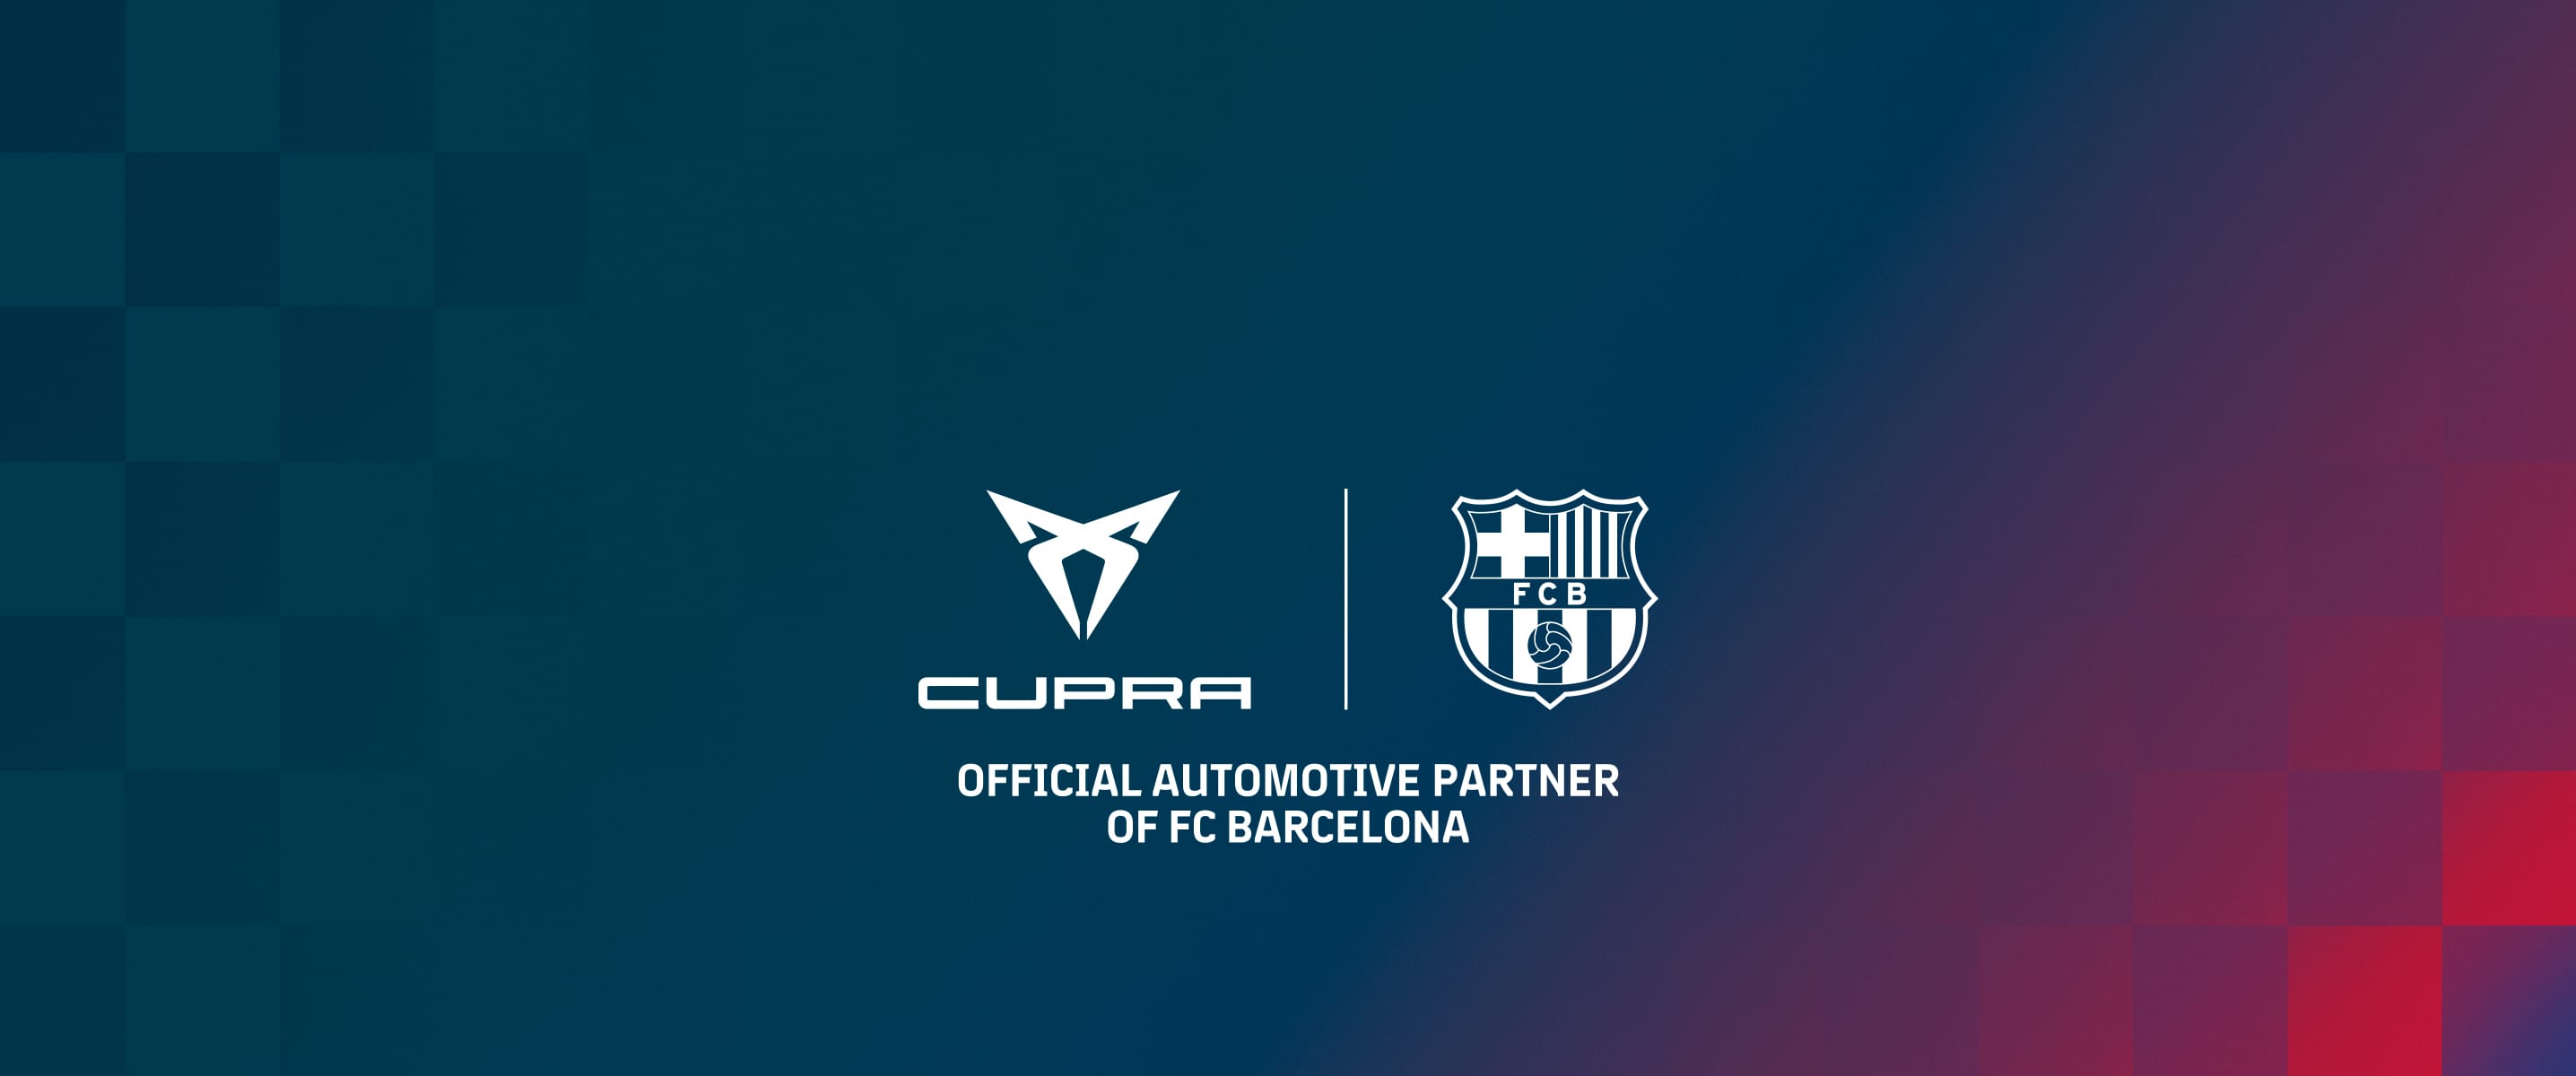 Partenariat entre CUPRA et le FC Barcelone 